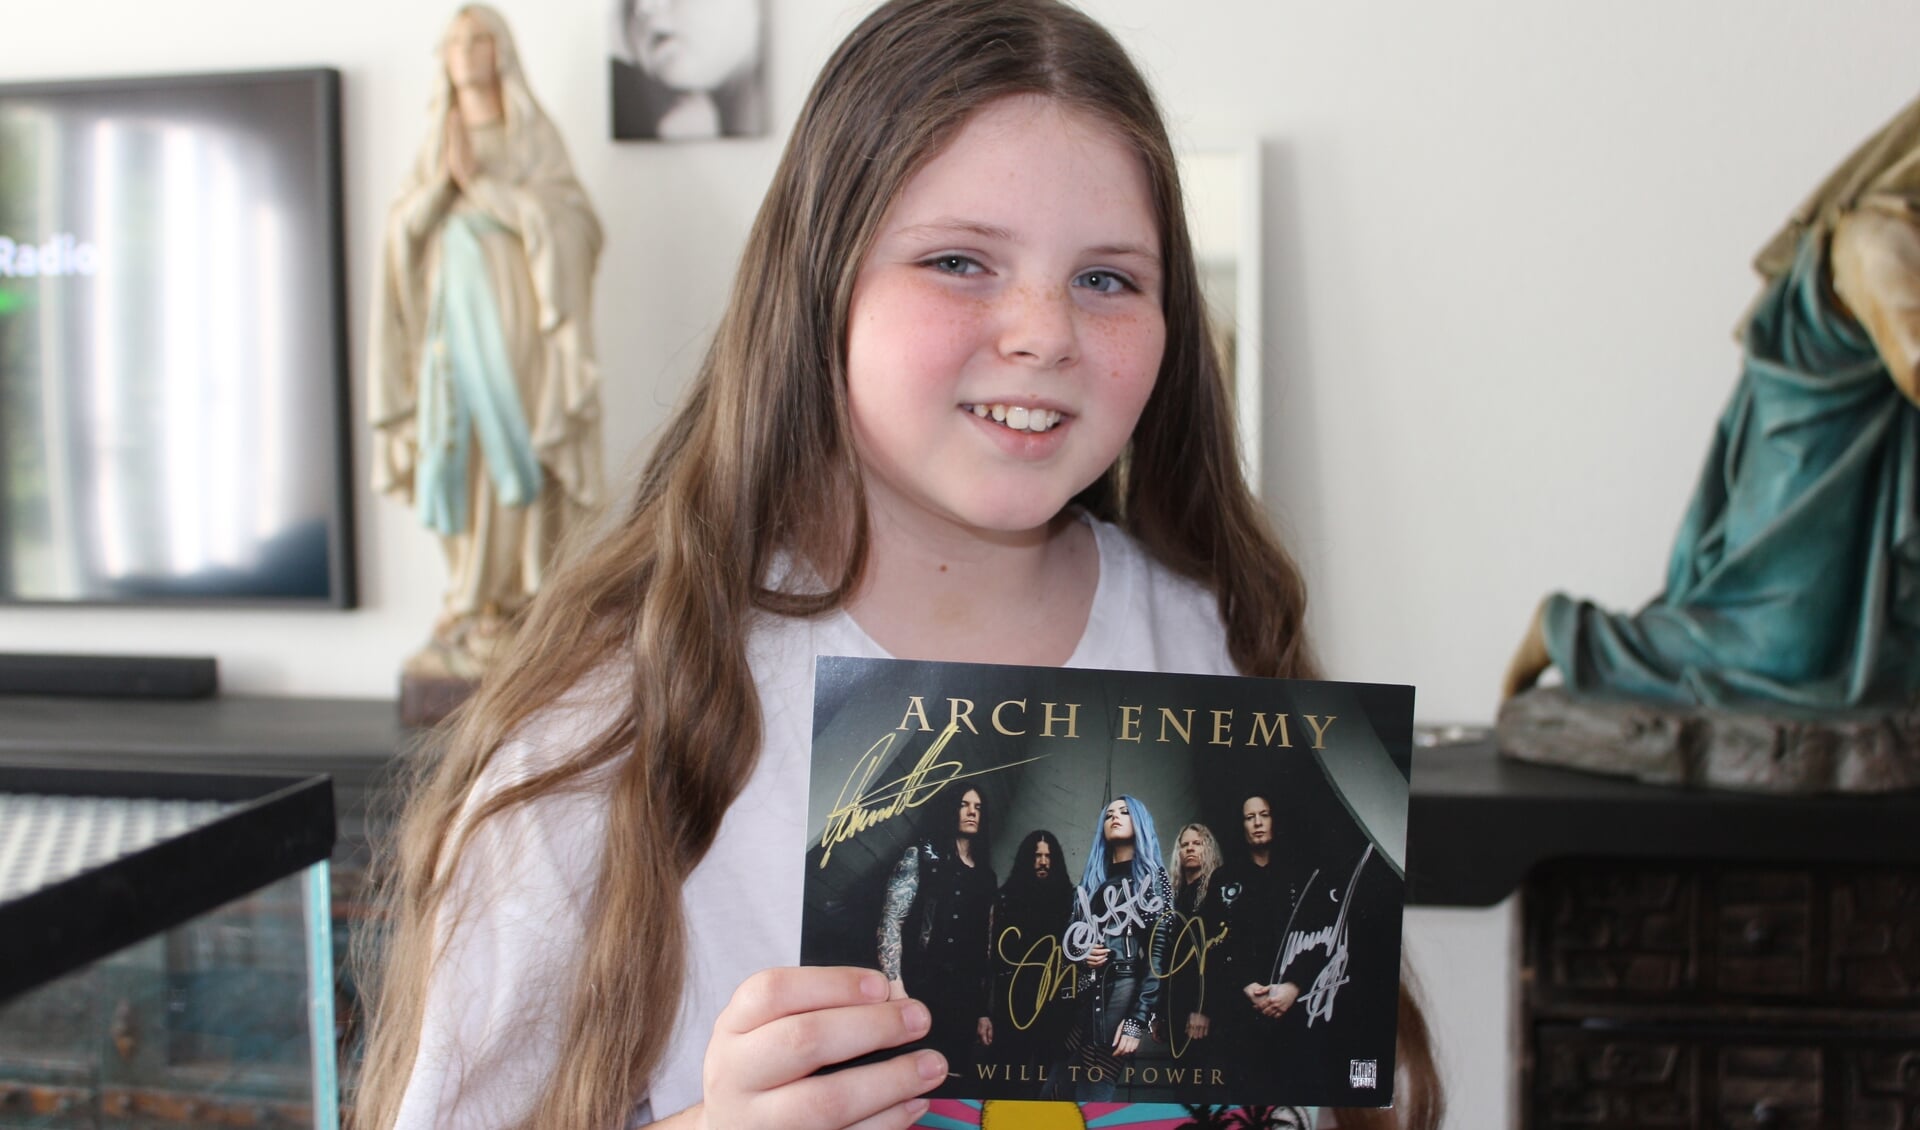 De grootste inspiratiebron van de 10-jarige 'grunter' Nova Huijben uit Rosmalen is toch wel de band Arch Enemy. (Foto: Wendy van Lijssel)